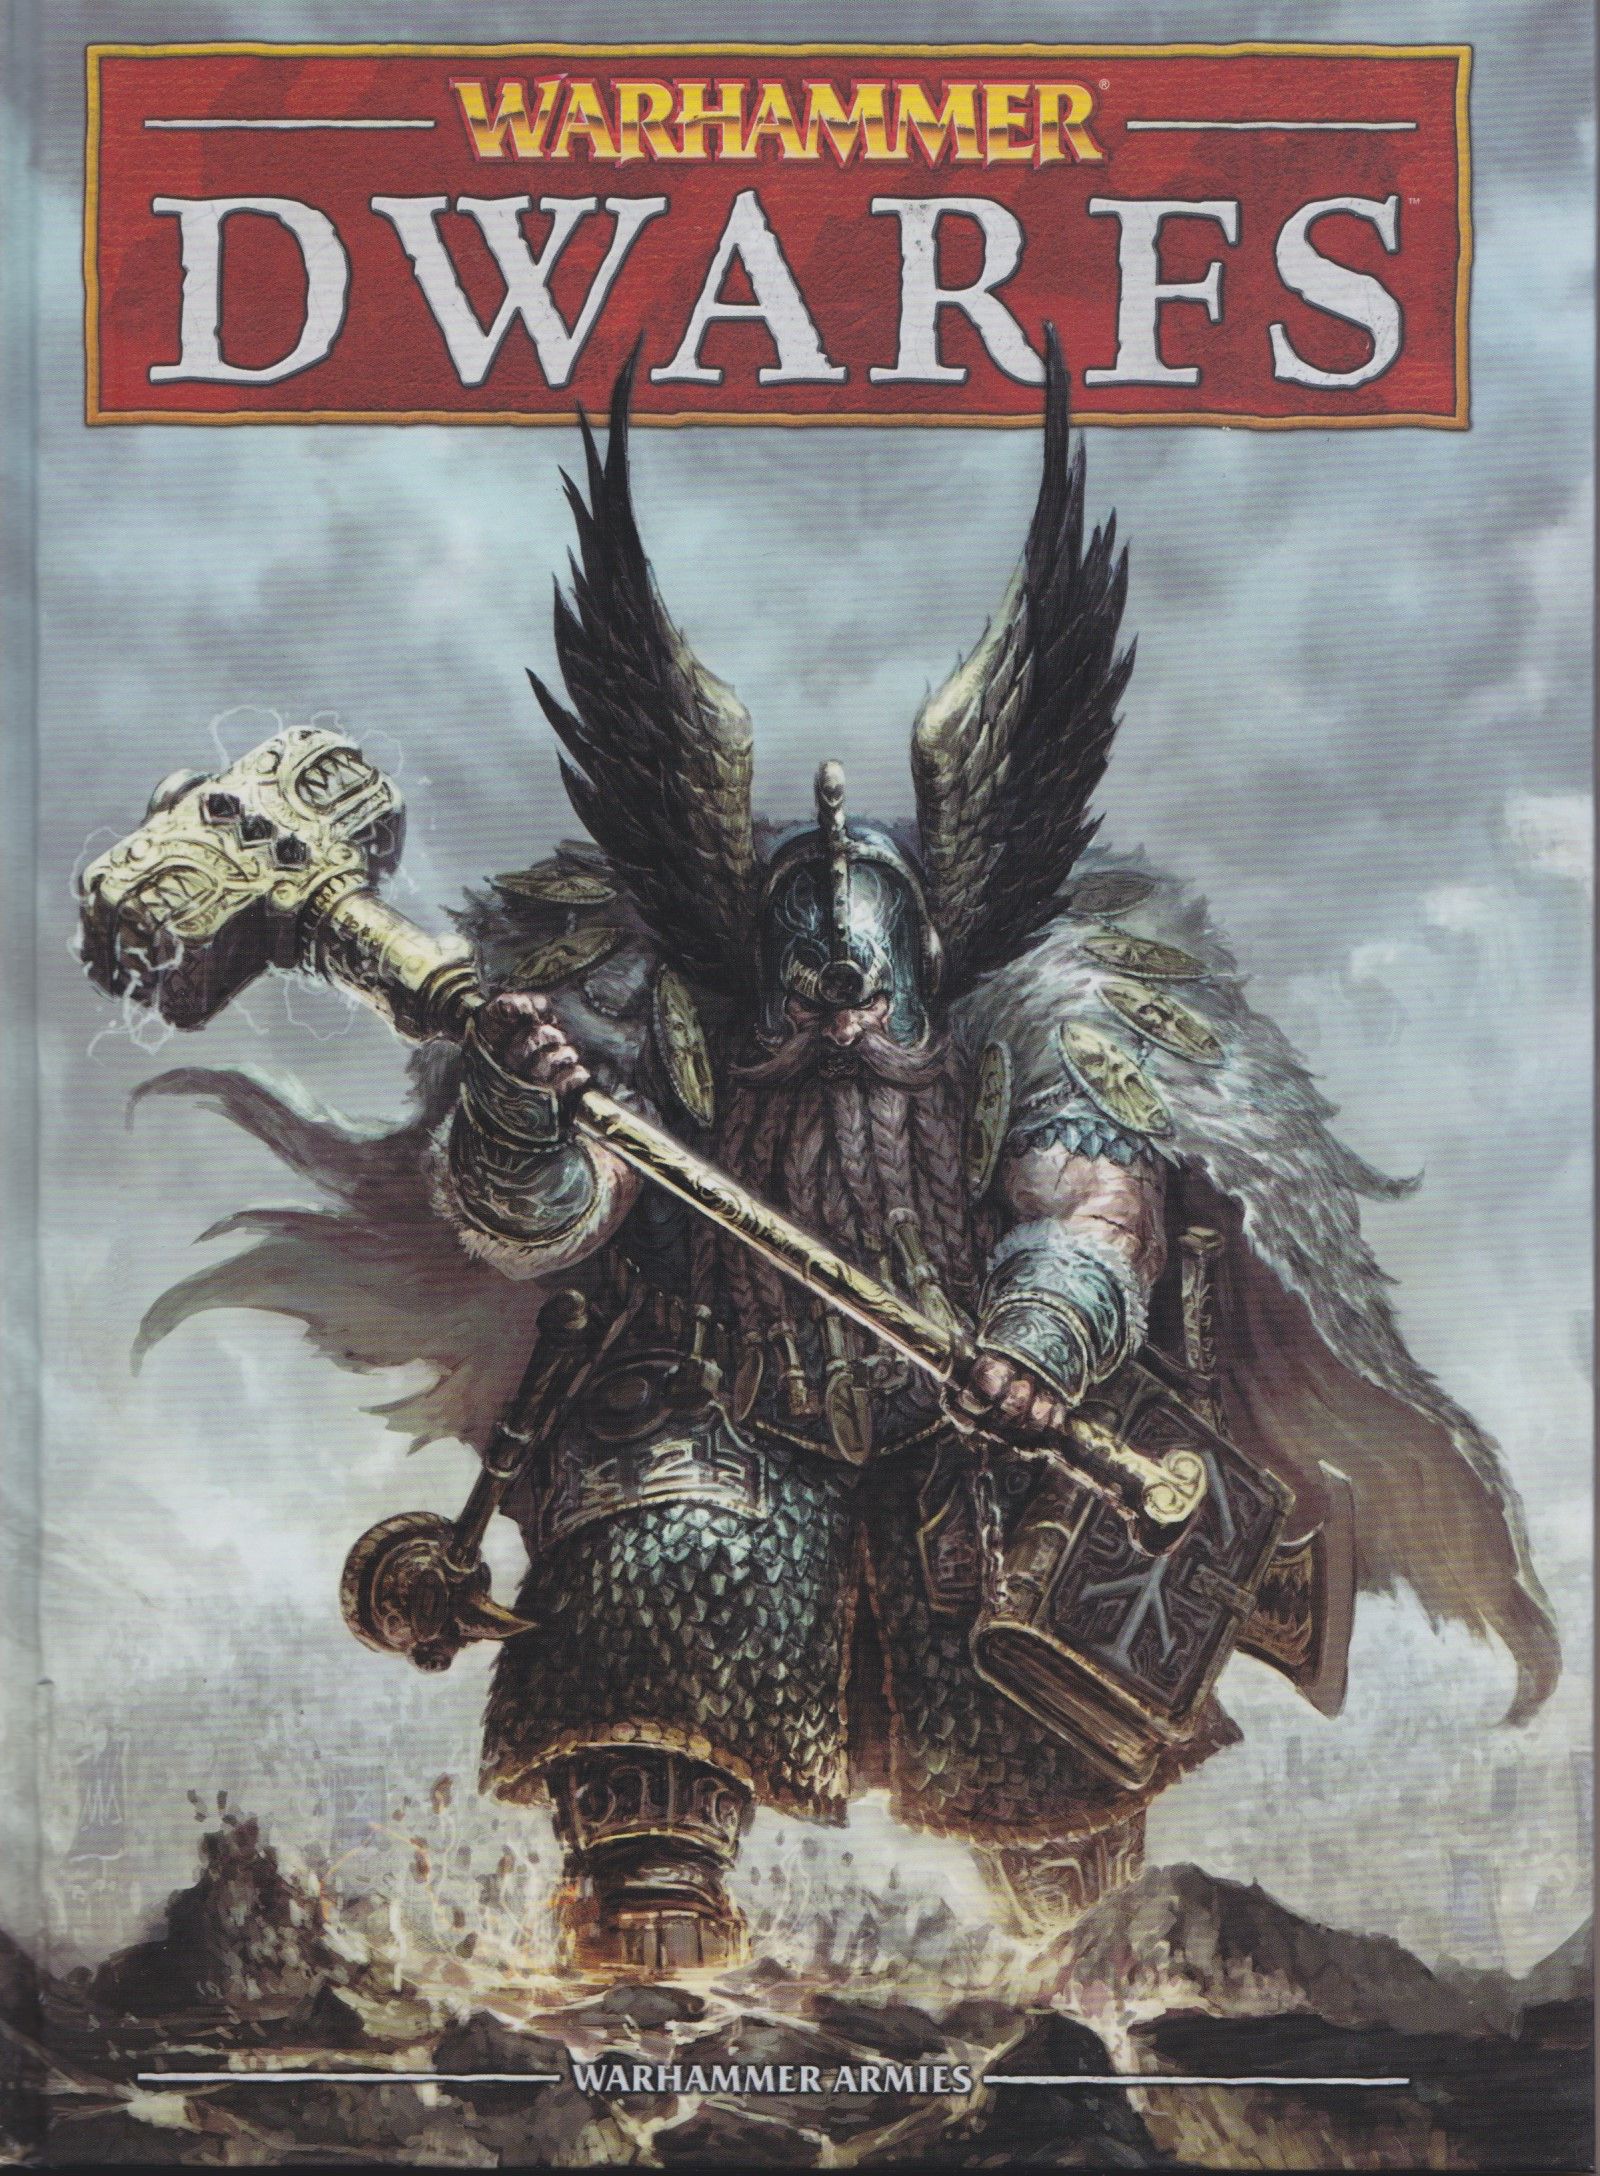 Warhammer (Eighth Edition): Dwarfs